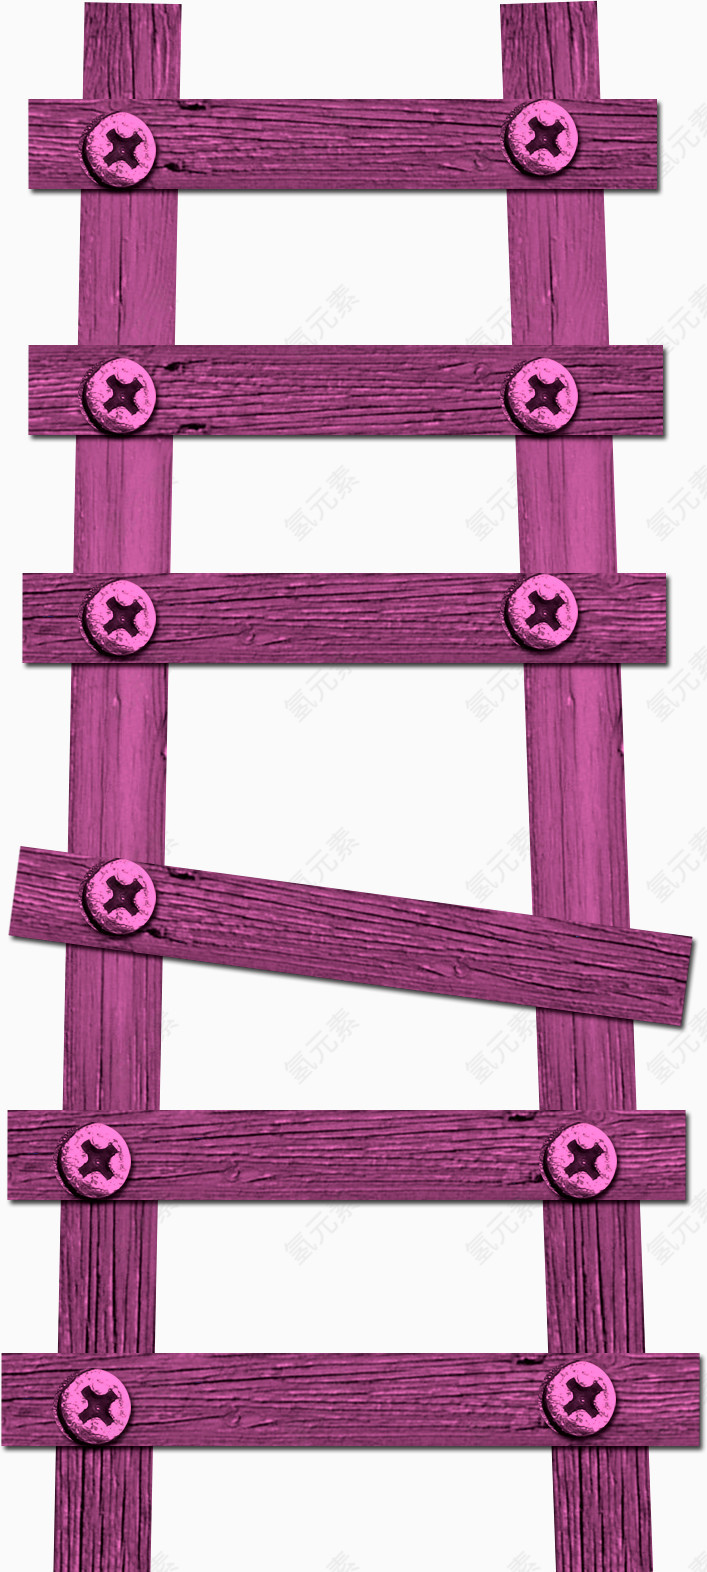 紫色木梯